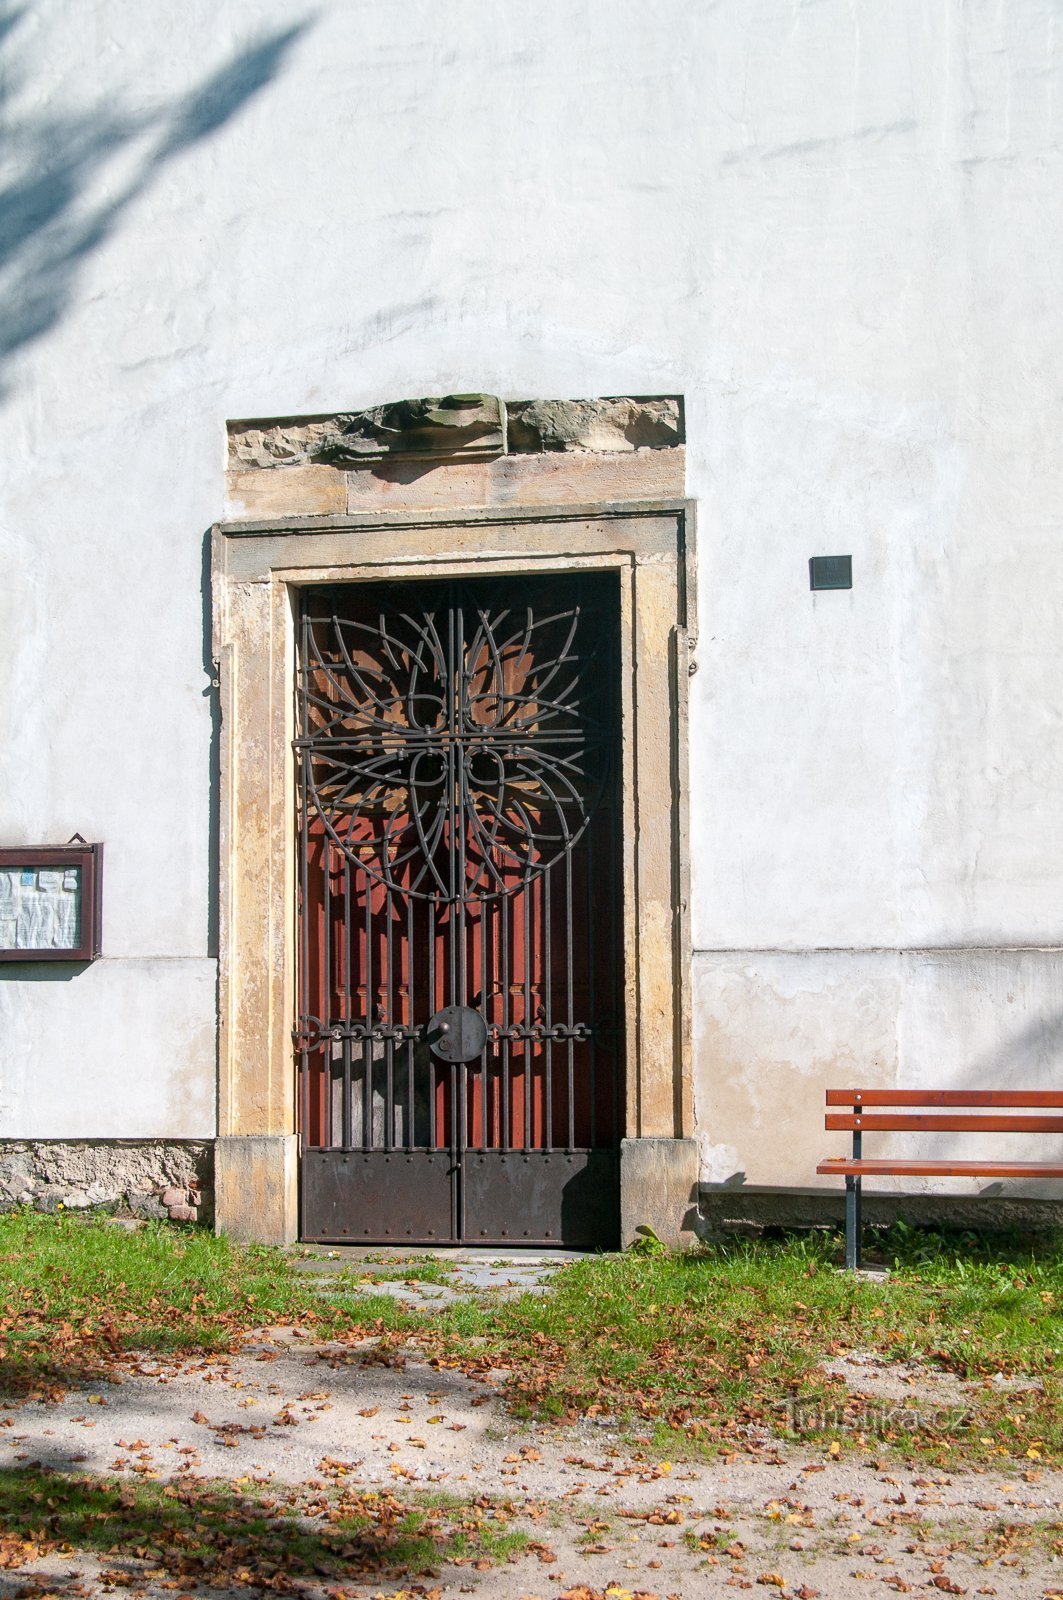 Οι πόρτες της εκκλησίας είναι κλειστές τον περισσότερο χρόνο